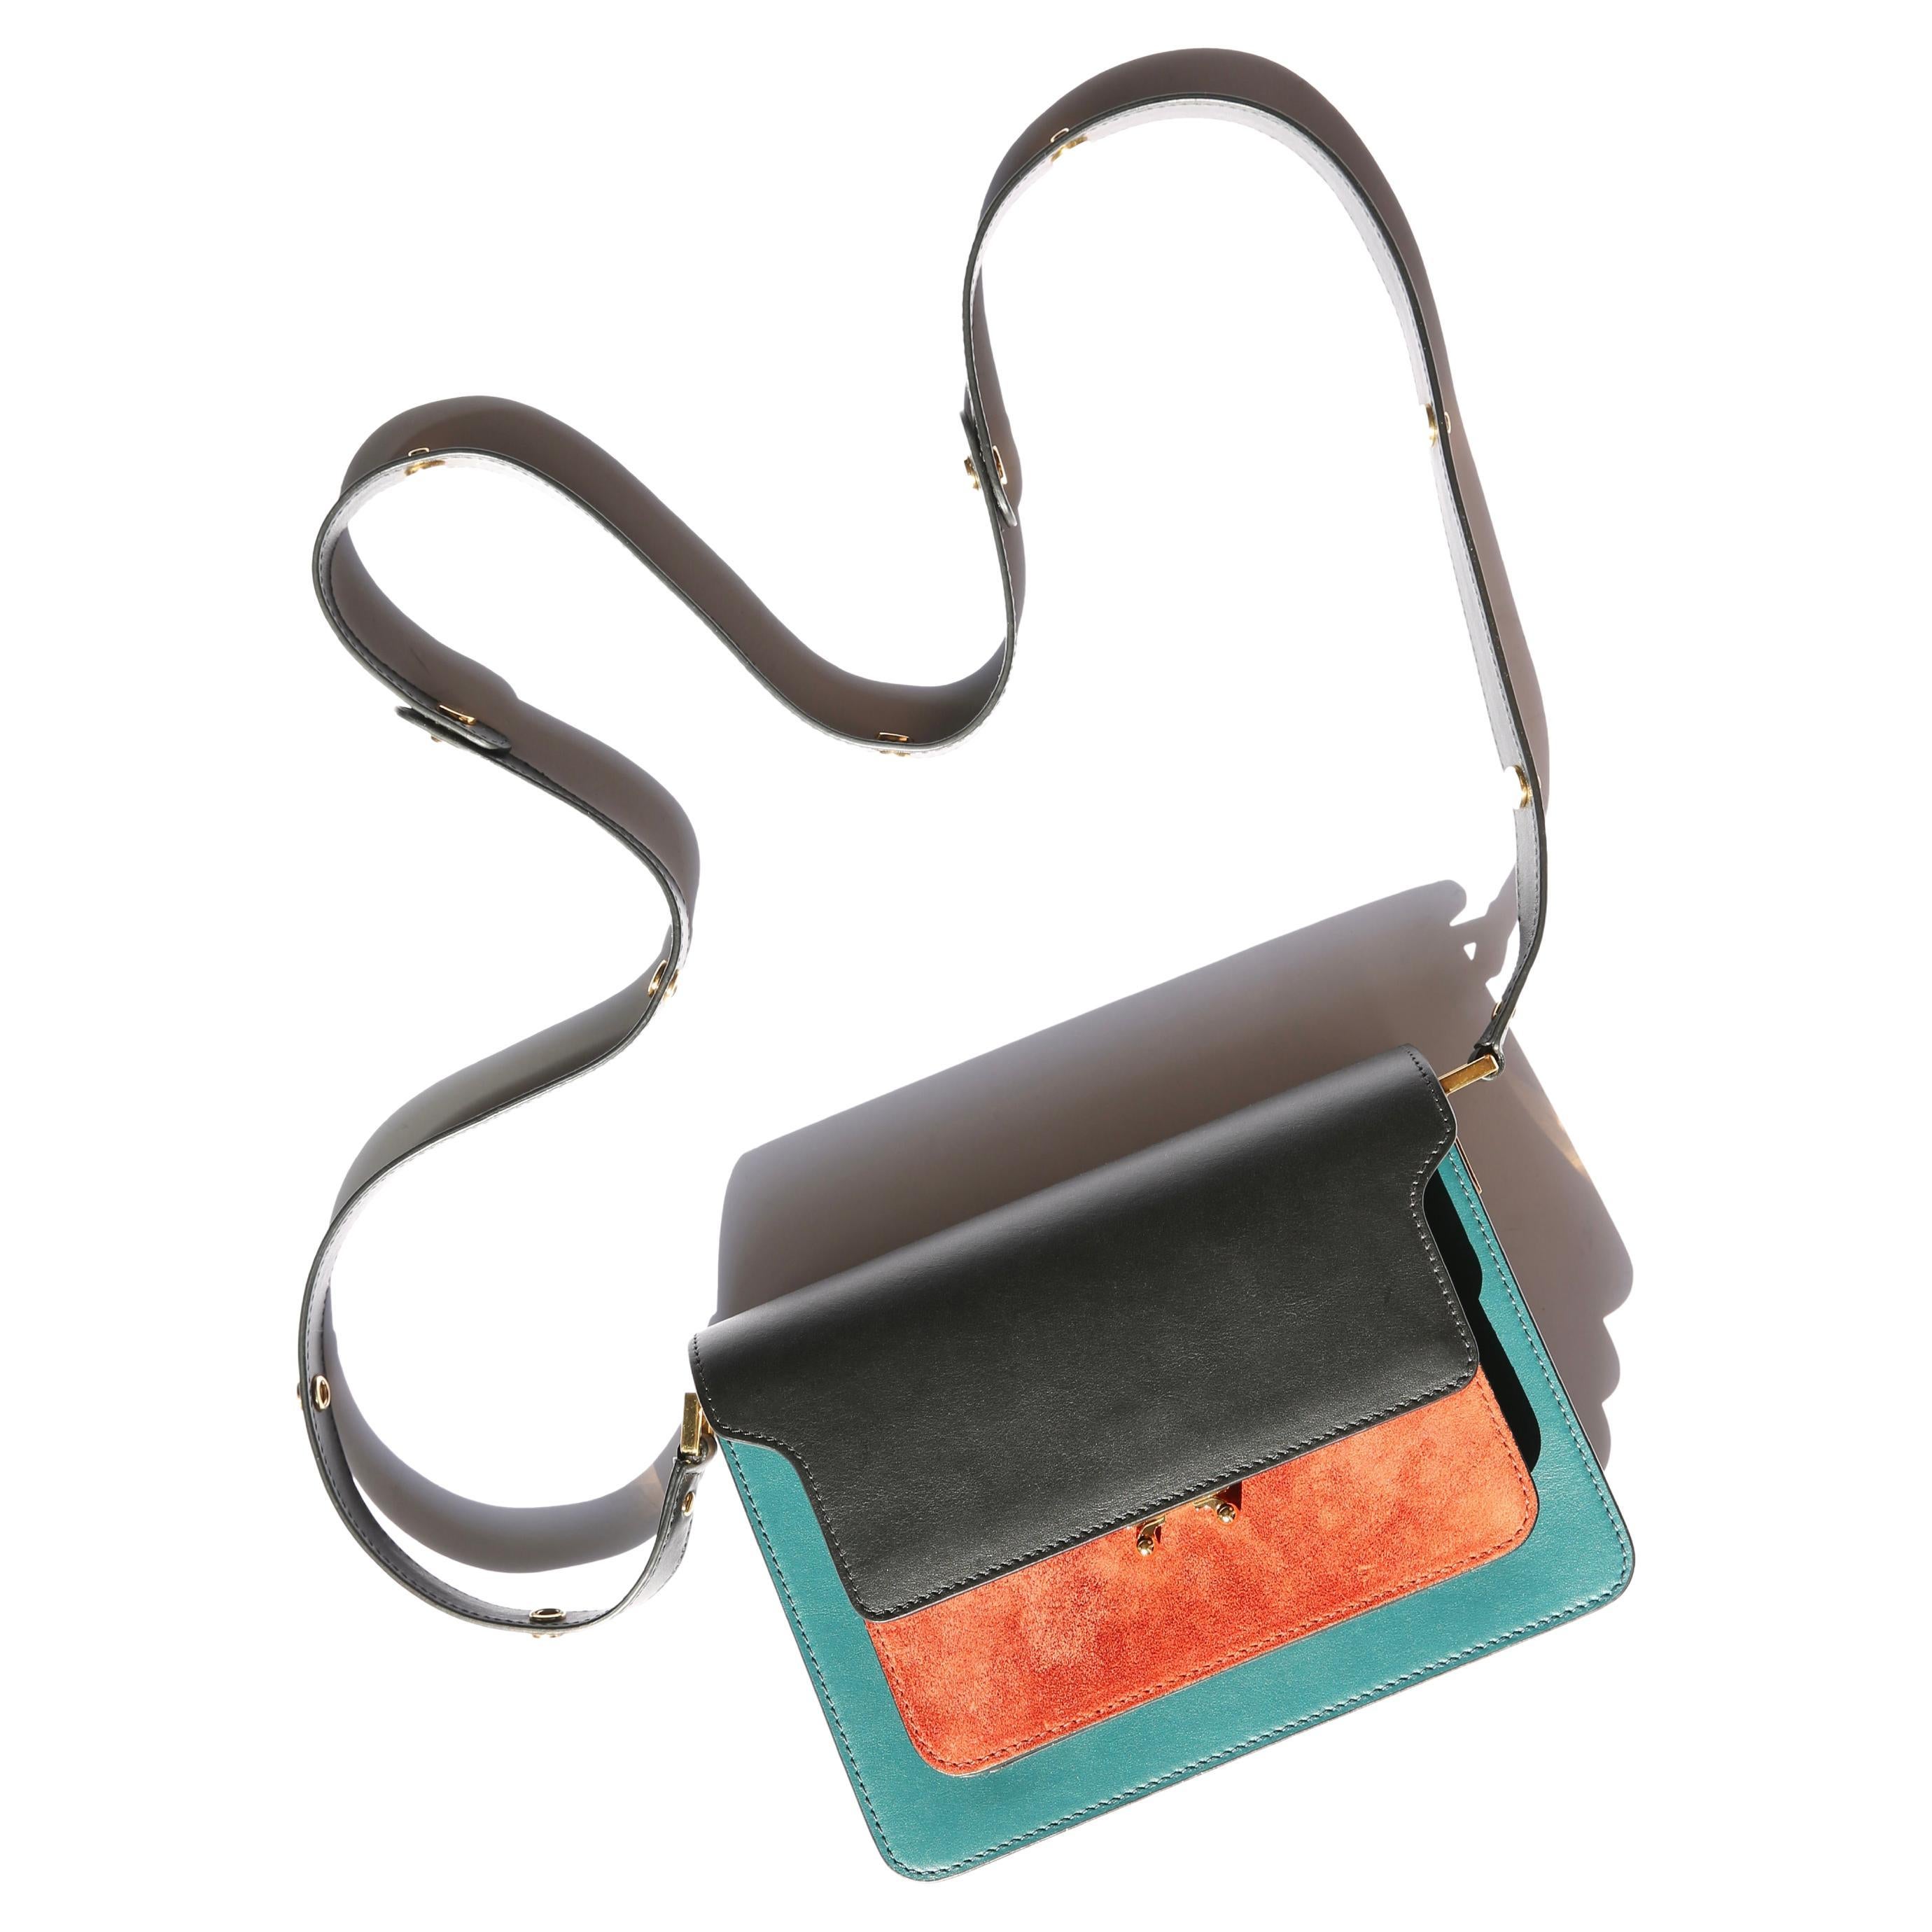 Marni tronc color block contrastant noir sarcelle rouille or cuir daim sac à bandoulière